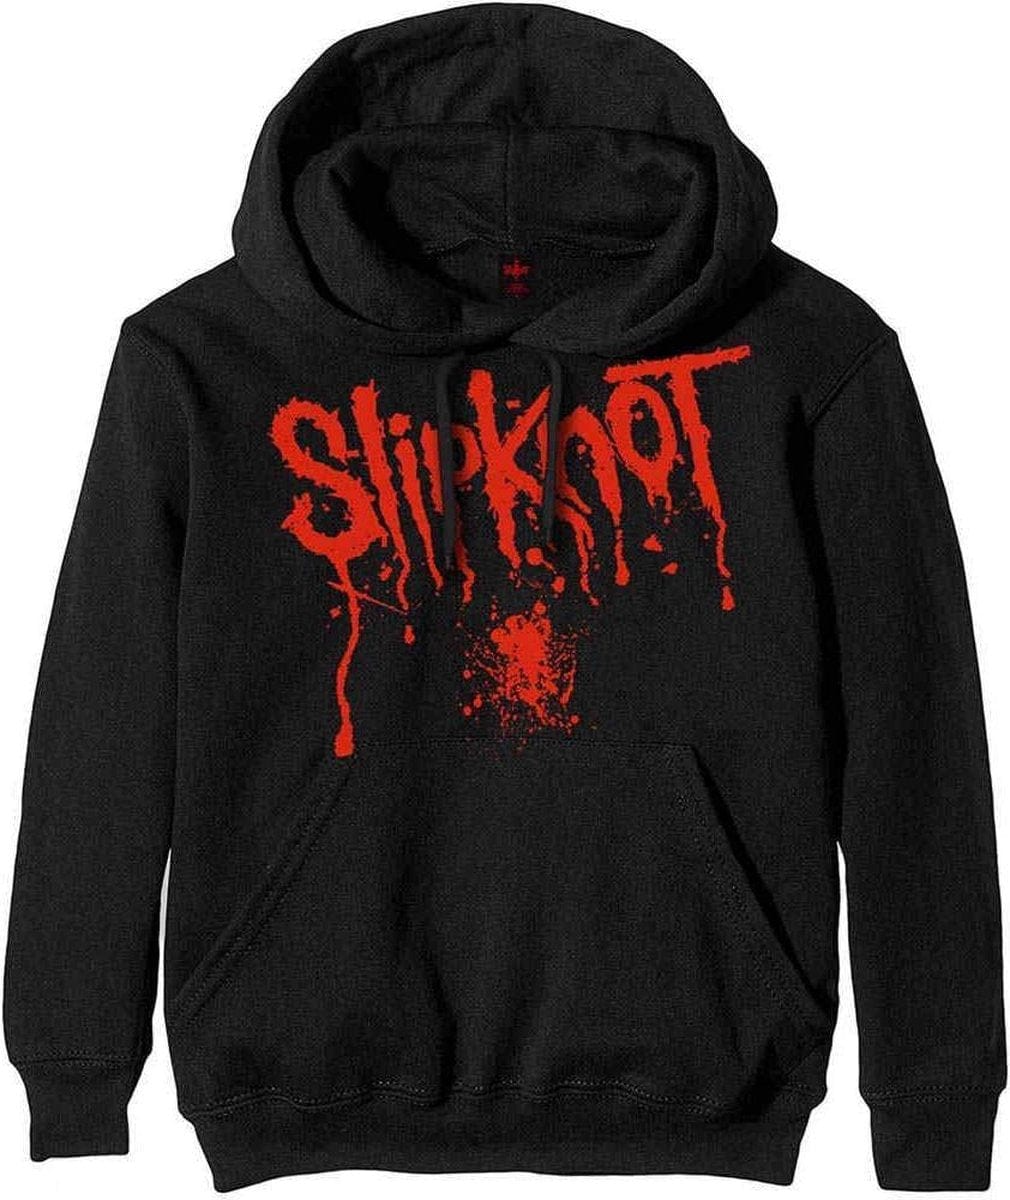 Slipknot - Splatter - Black - Large [Hoodies]